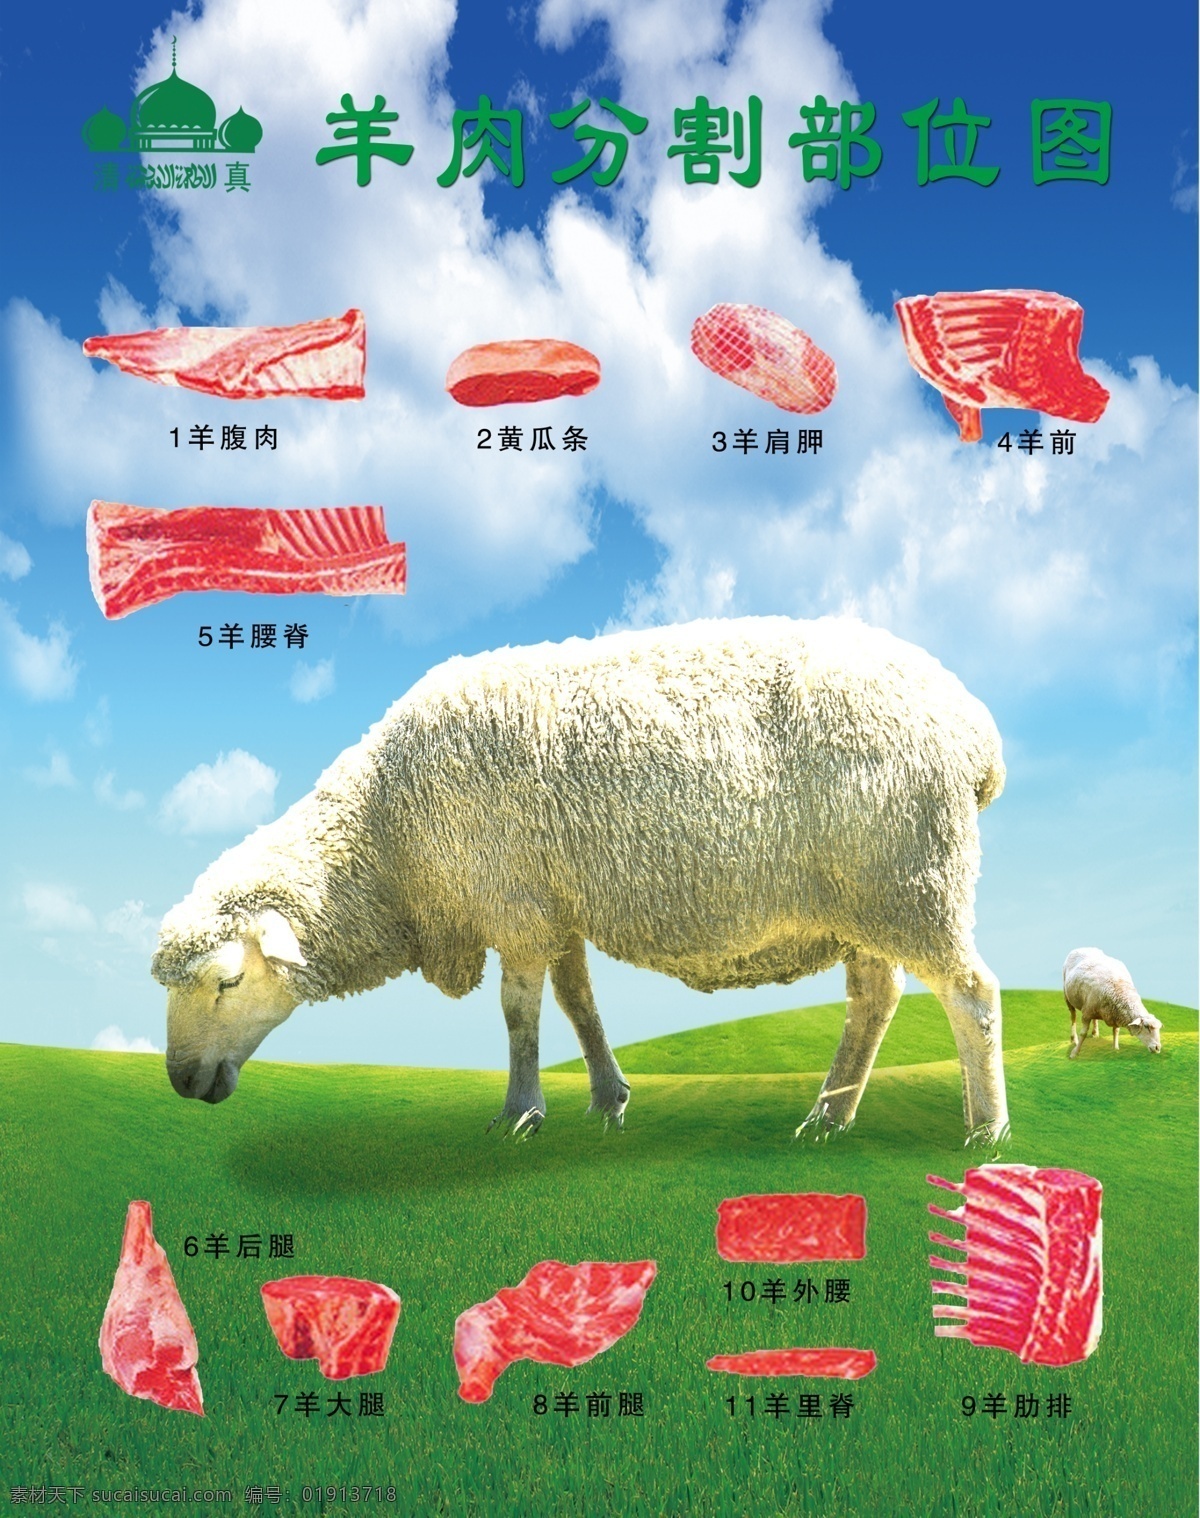 羊肉分割图 羊肉 分割图 部位图 背景图 展板 牛羊肉 绿色